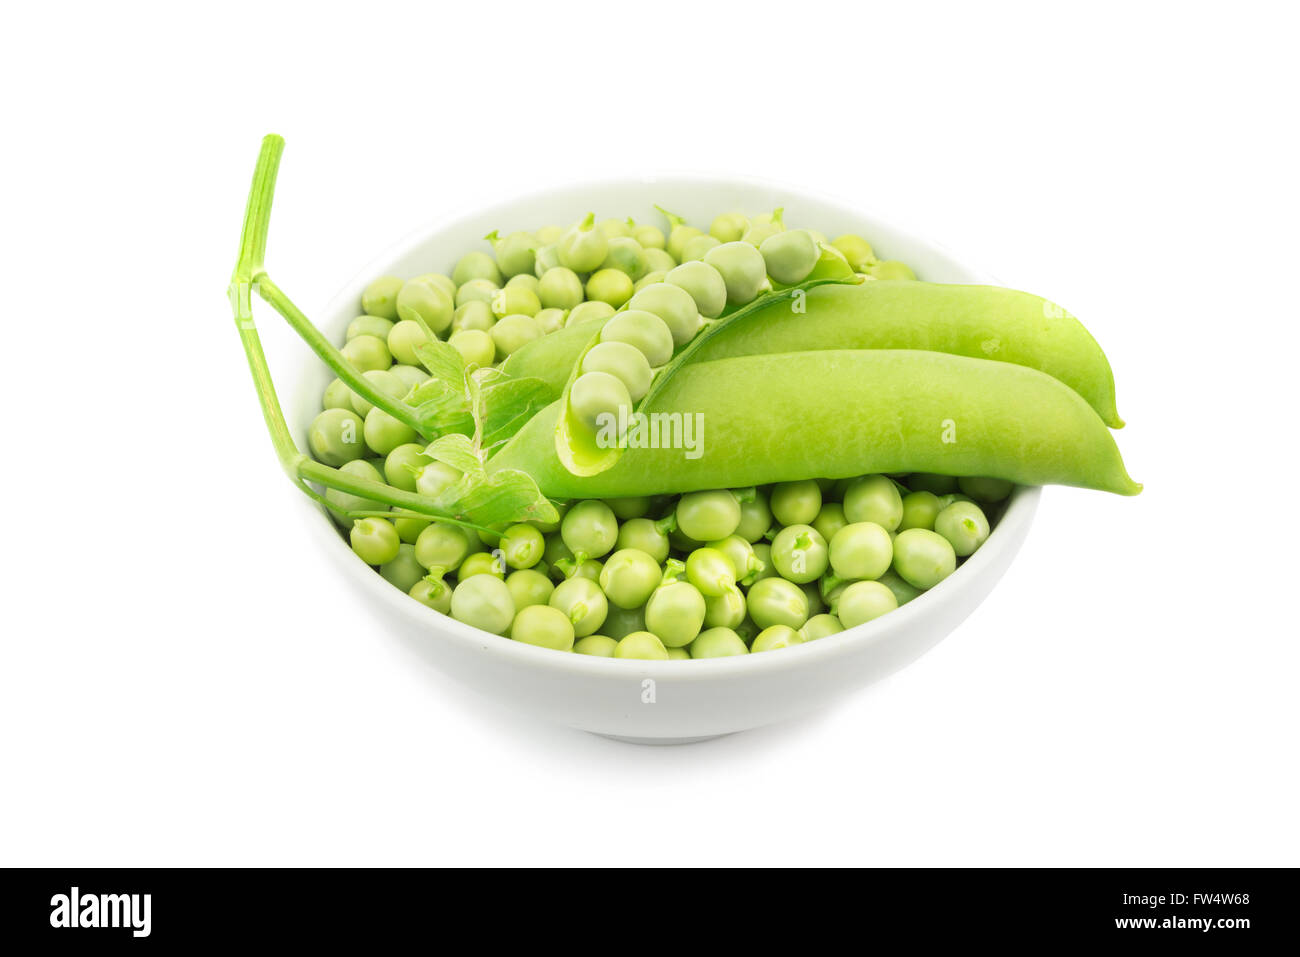 raw green peas bowl on white background Stock Photo